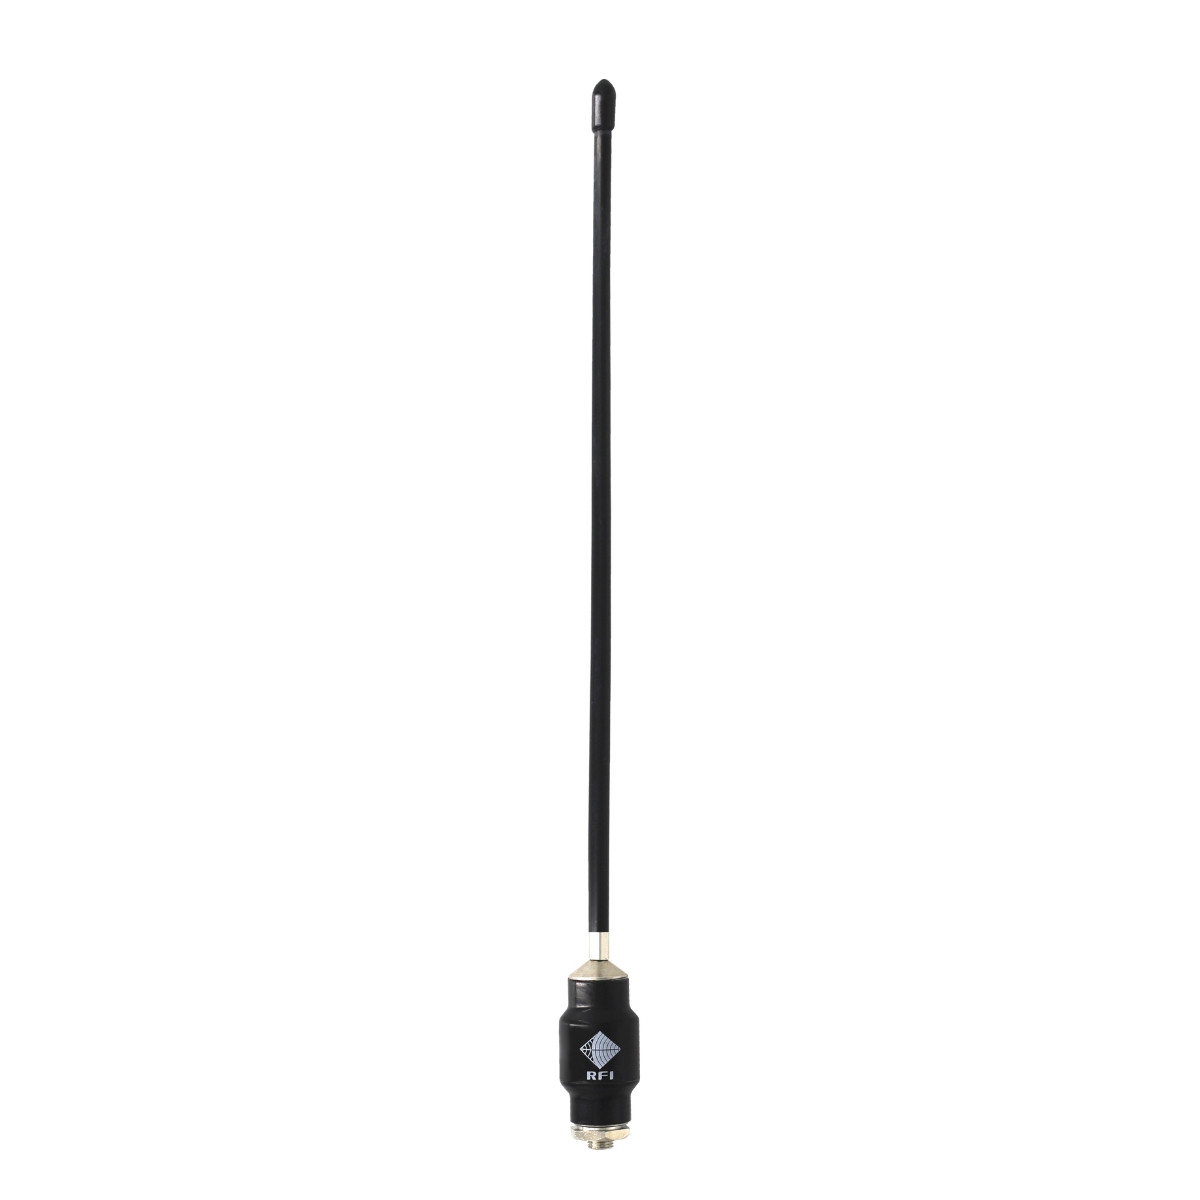 ANT:UHF Mobile RFI CD51-68-73 450-520MHz